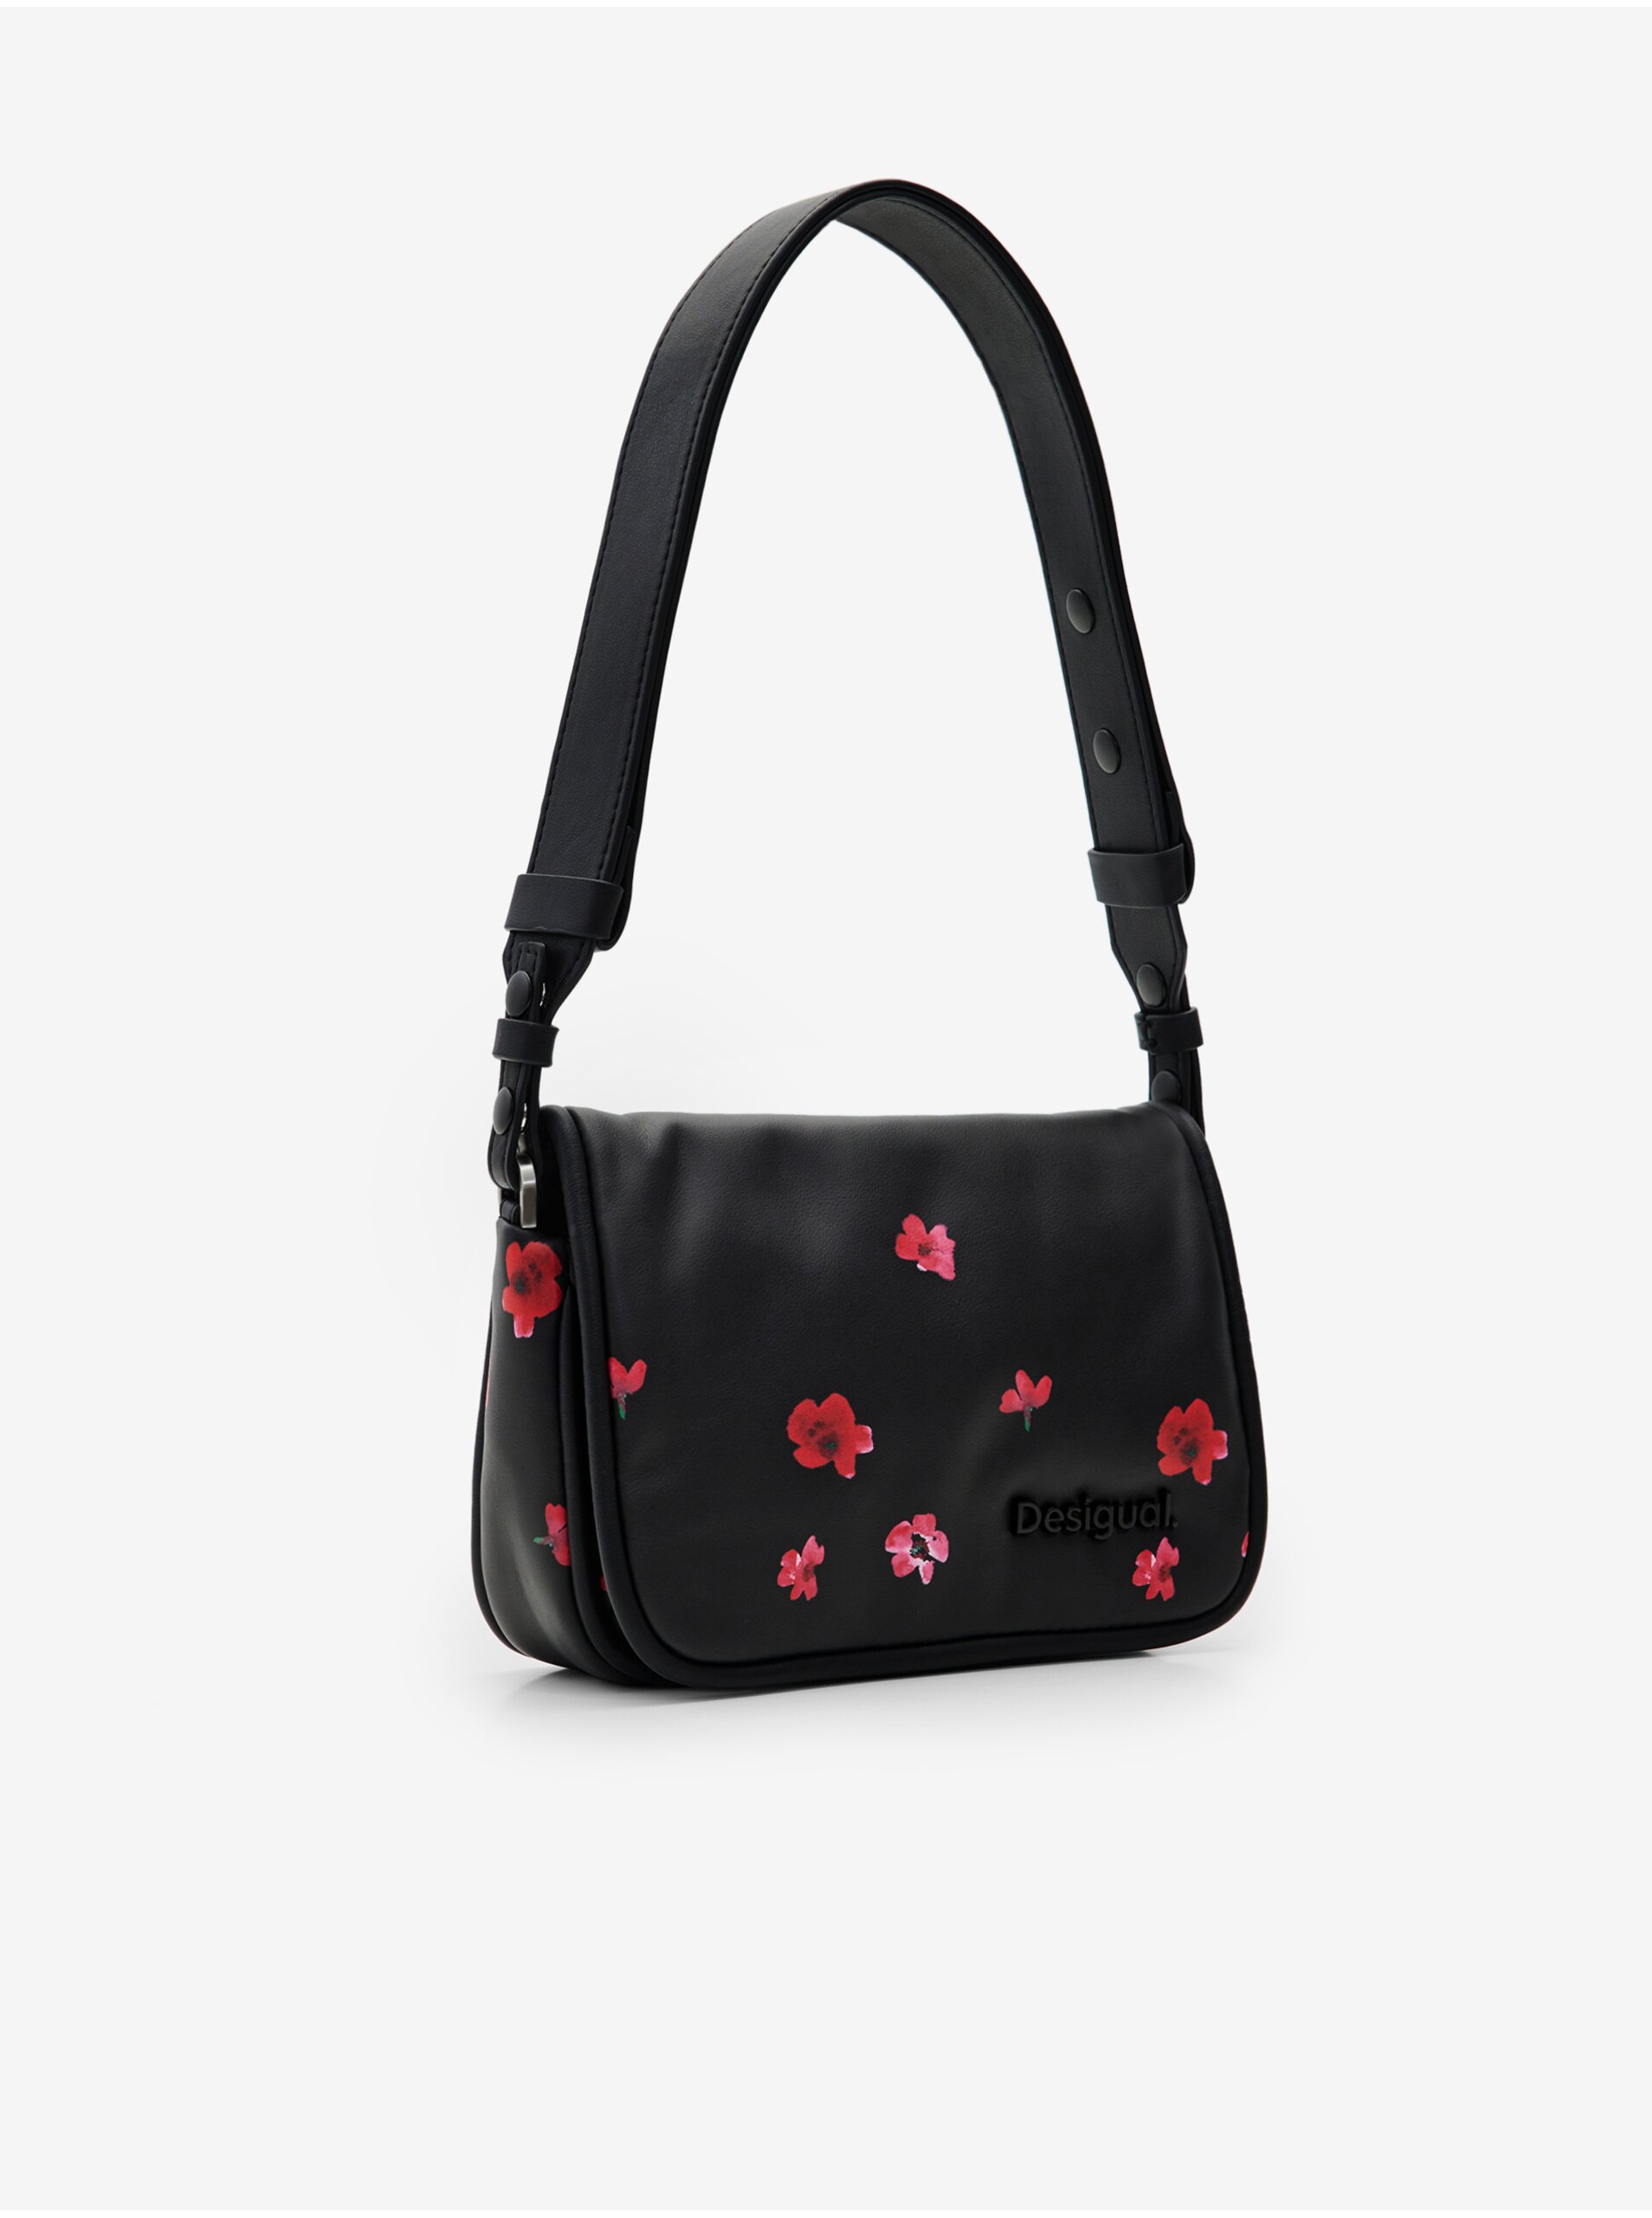 Black women's floral handbag Desigual Circa Gales - Women